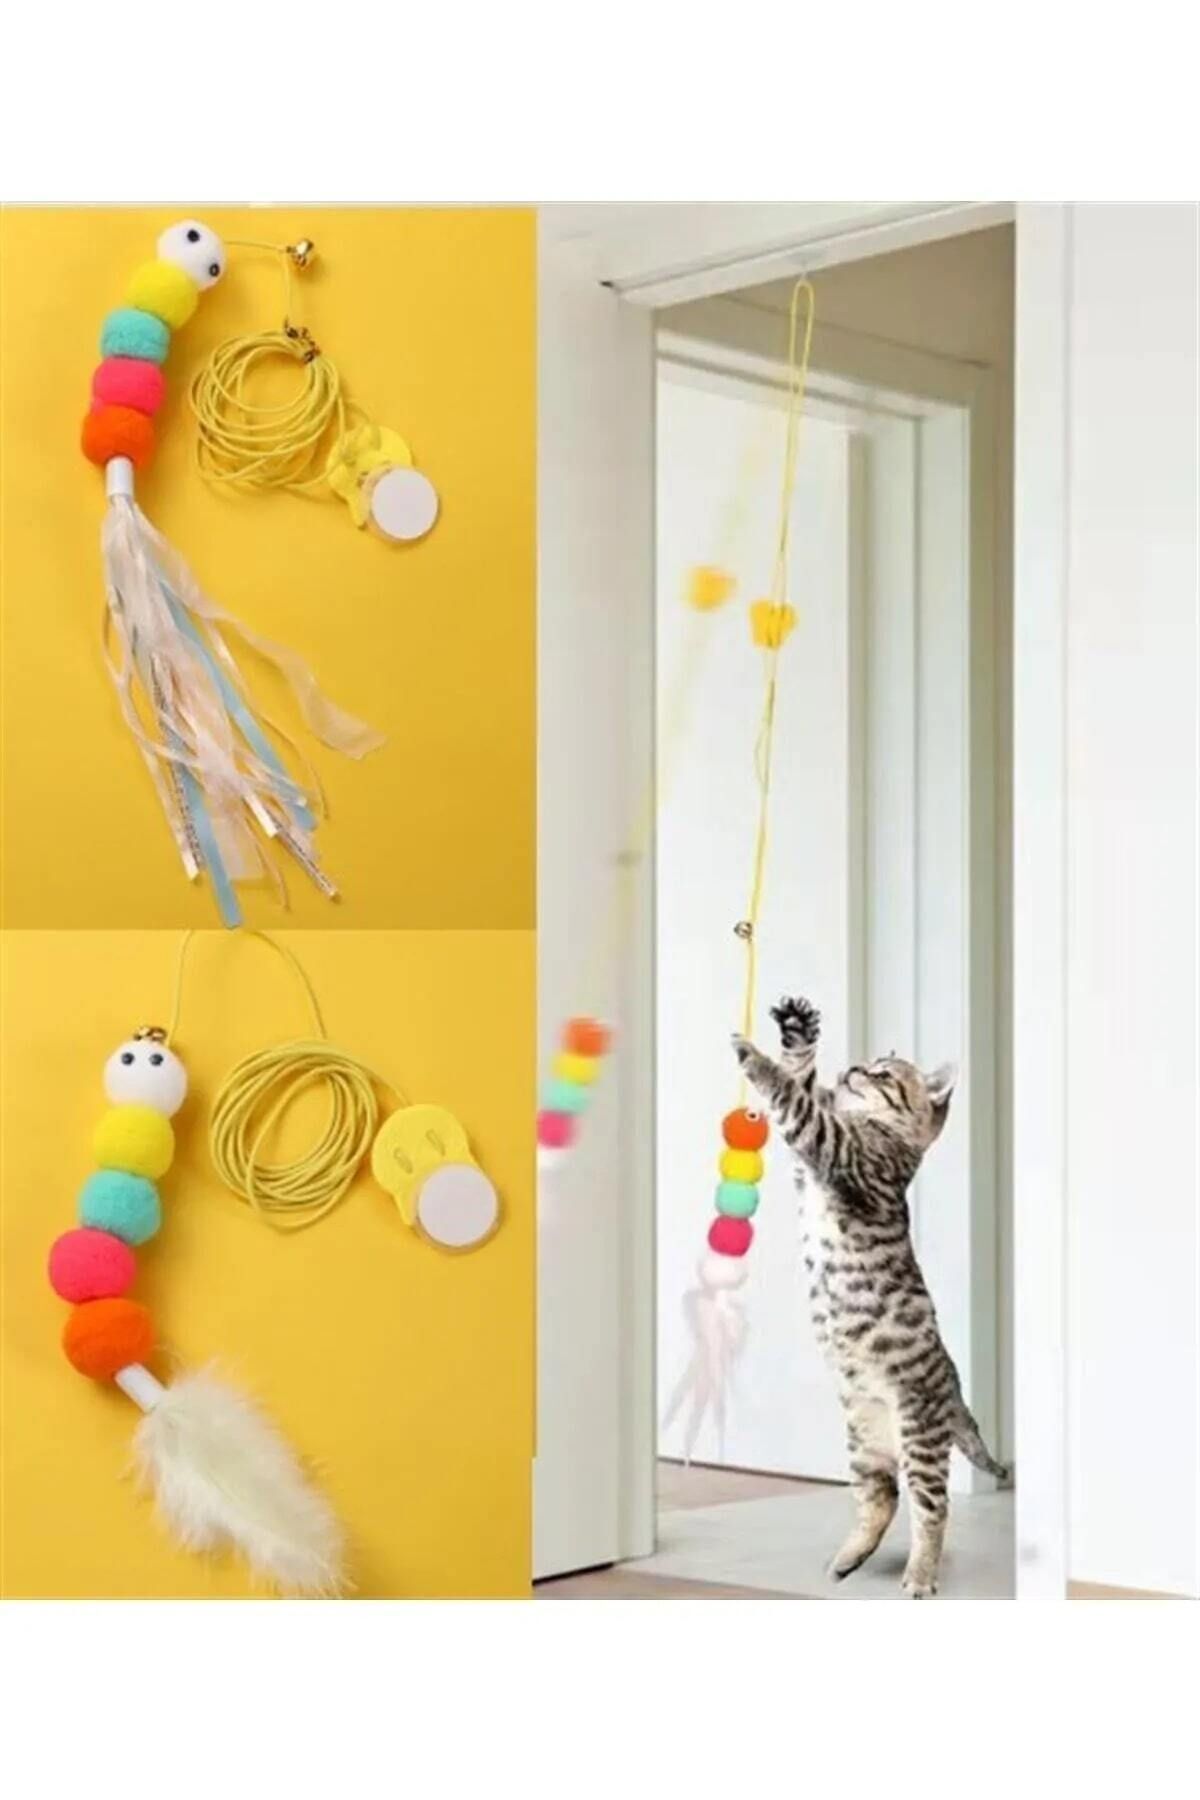 RELATOS Elastik Tırtıl Kedi Oyuncağı Vantuzlu Lastikli Kedi Kelebek Yakalama Egzersiz Oyuncağı